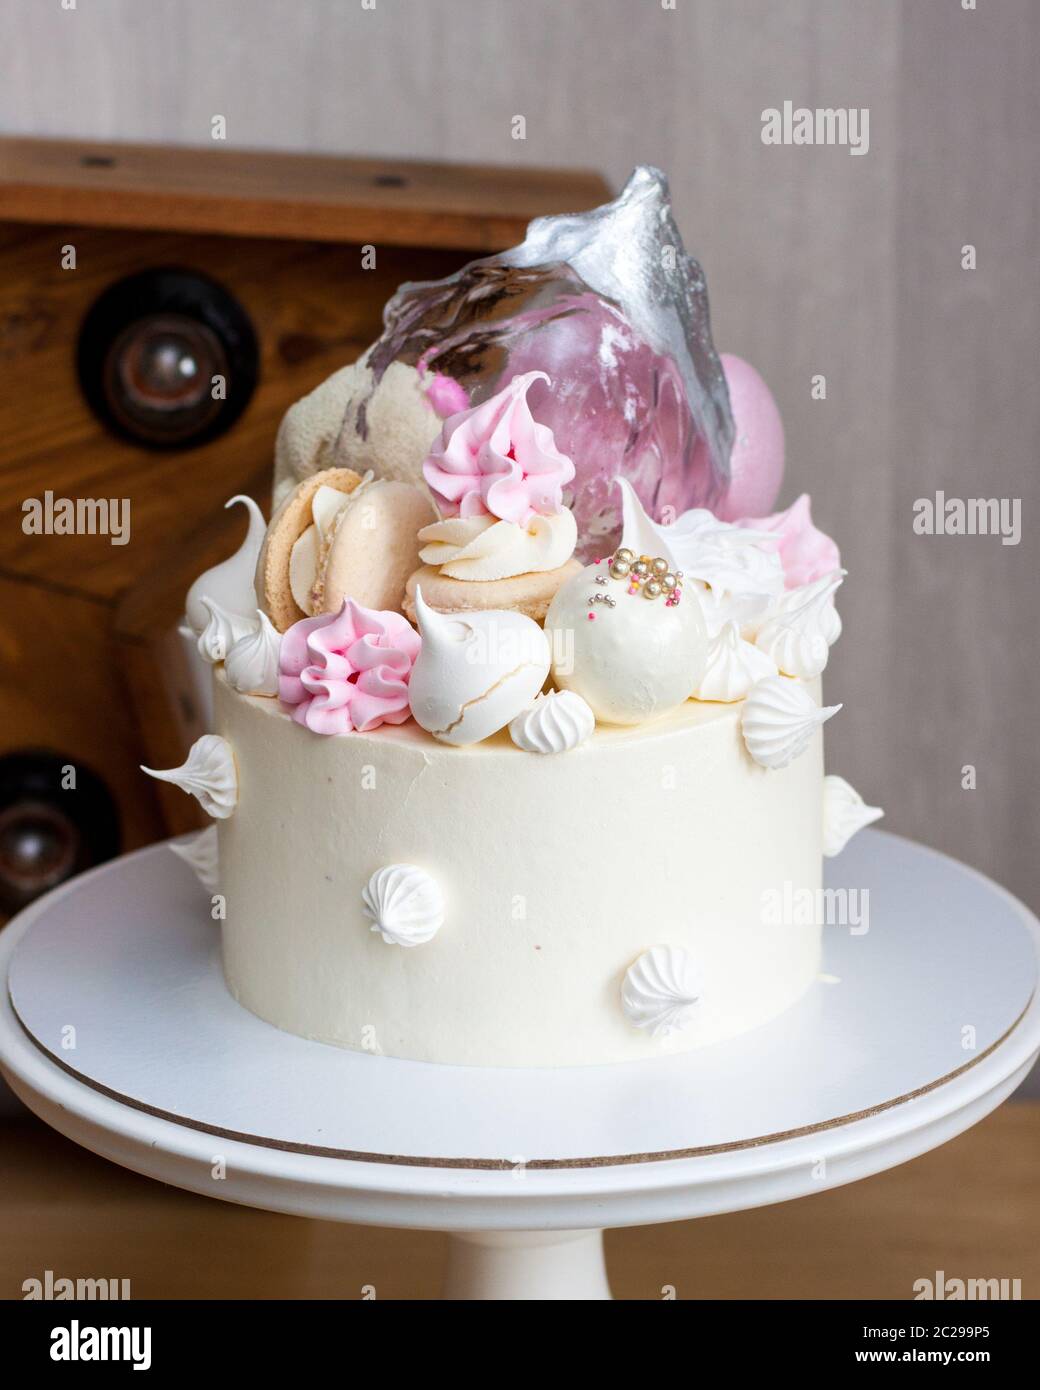 Gâteau blanc élégant avec de l'isomalt, du chocolat, des macarons, des meringues, des éléments roses et argentés. Banque D'Images